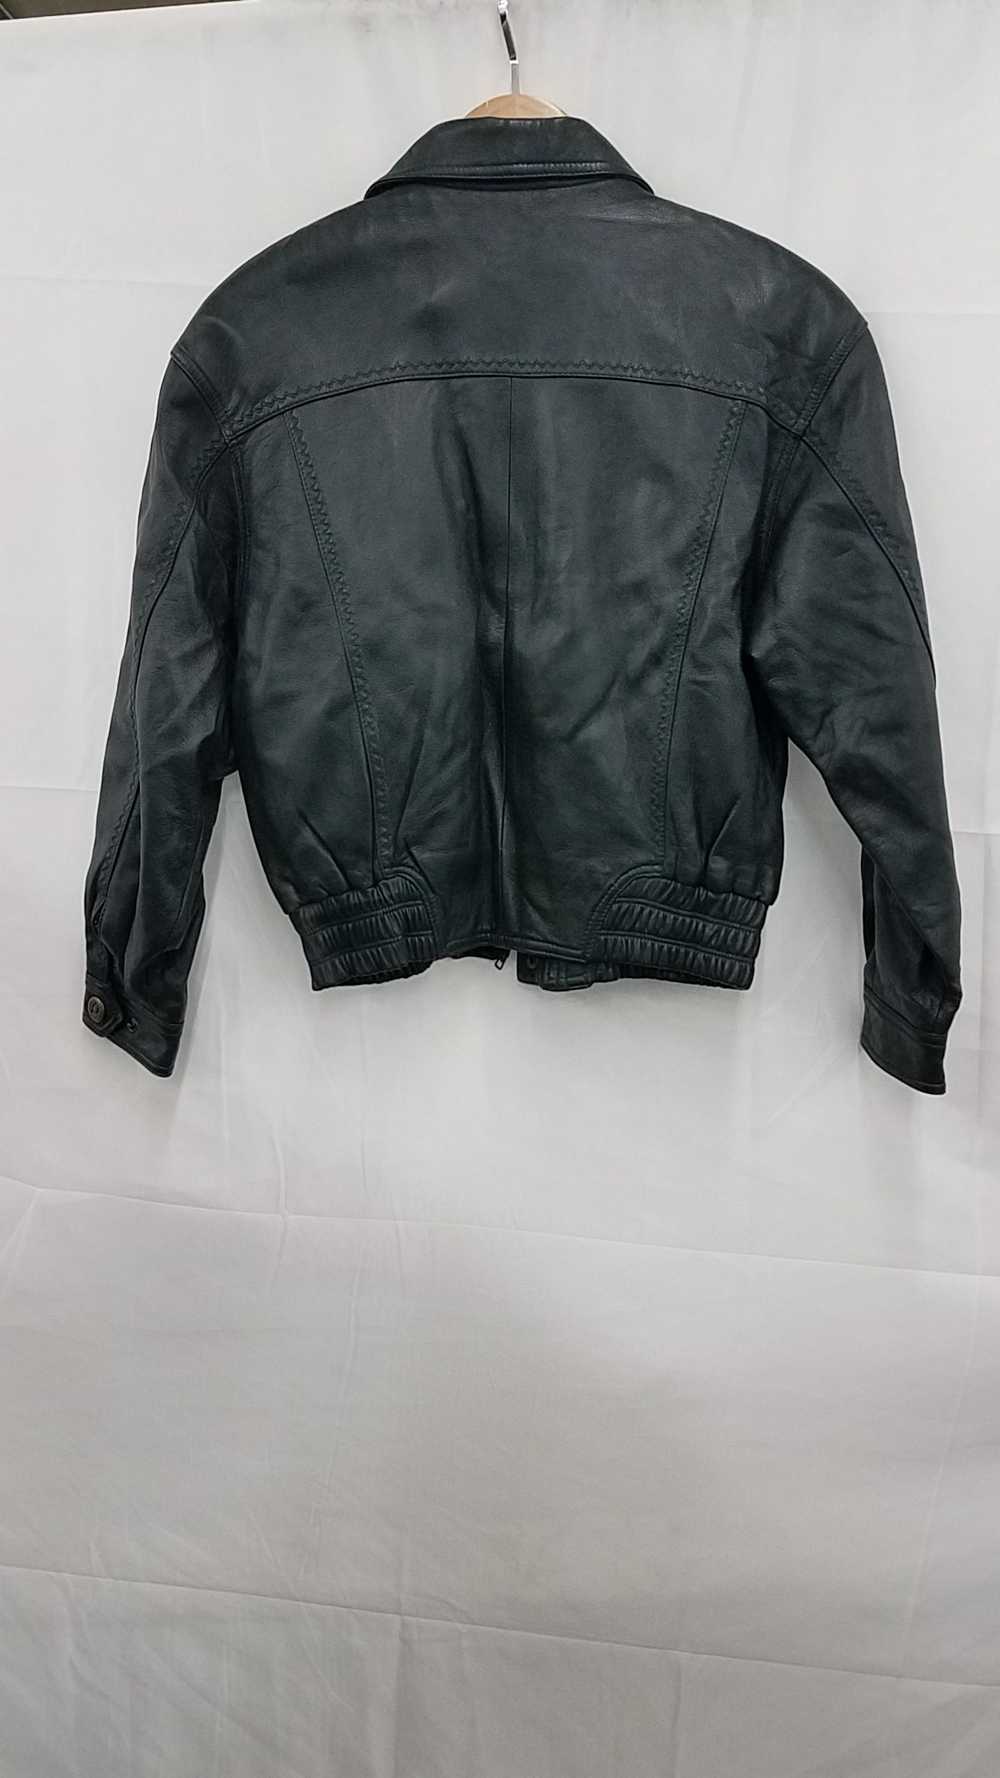 Giannini Leather Jacket Size Medium - image 2